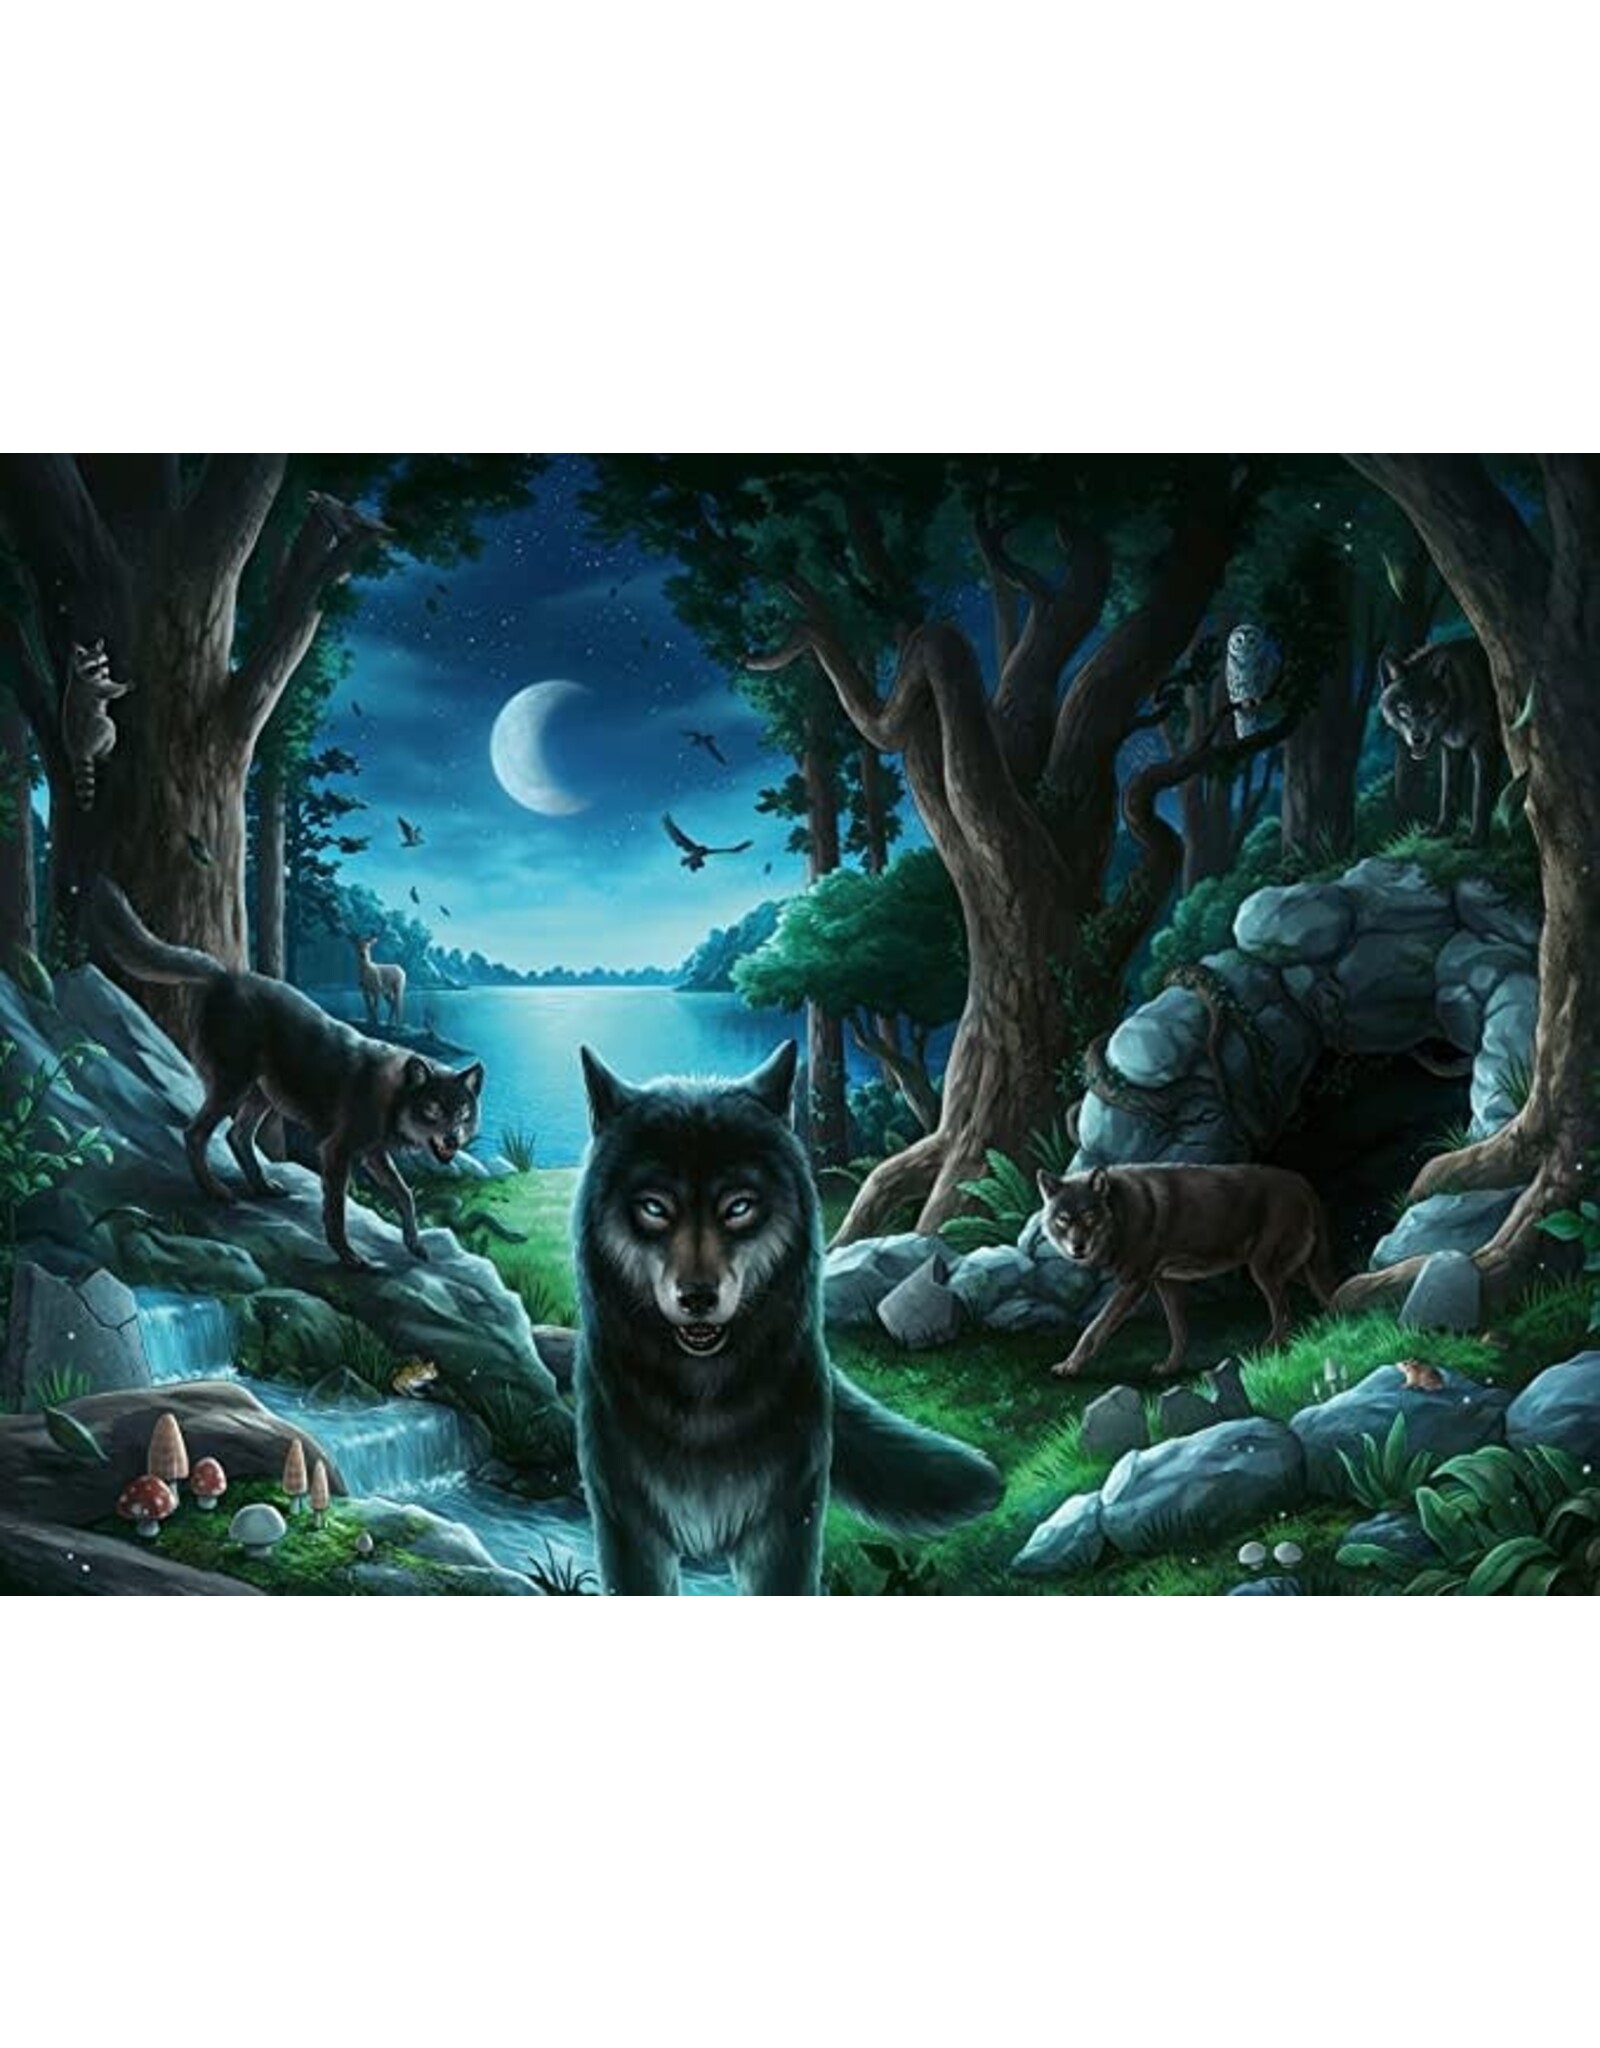 Ravensburger Curse of the Wolves Escape 759 Piece Puzzle